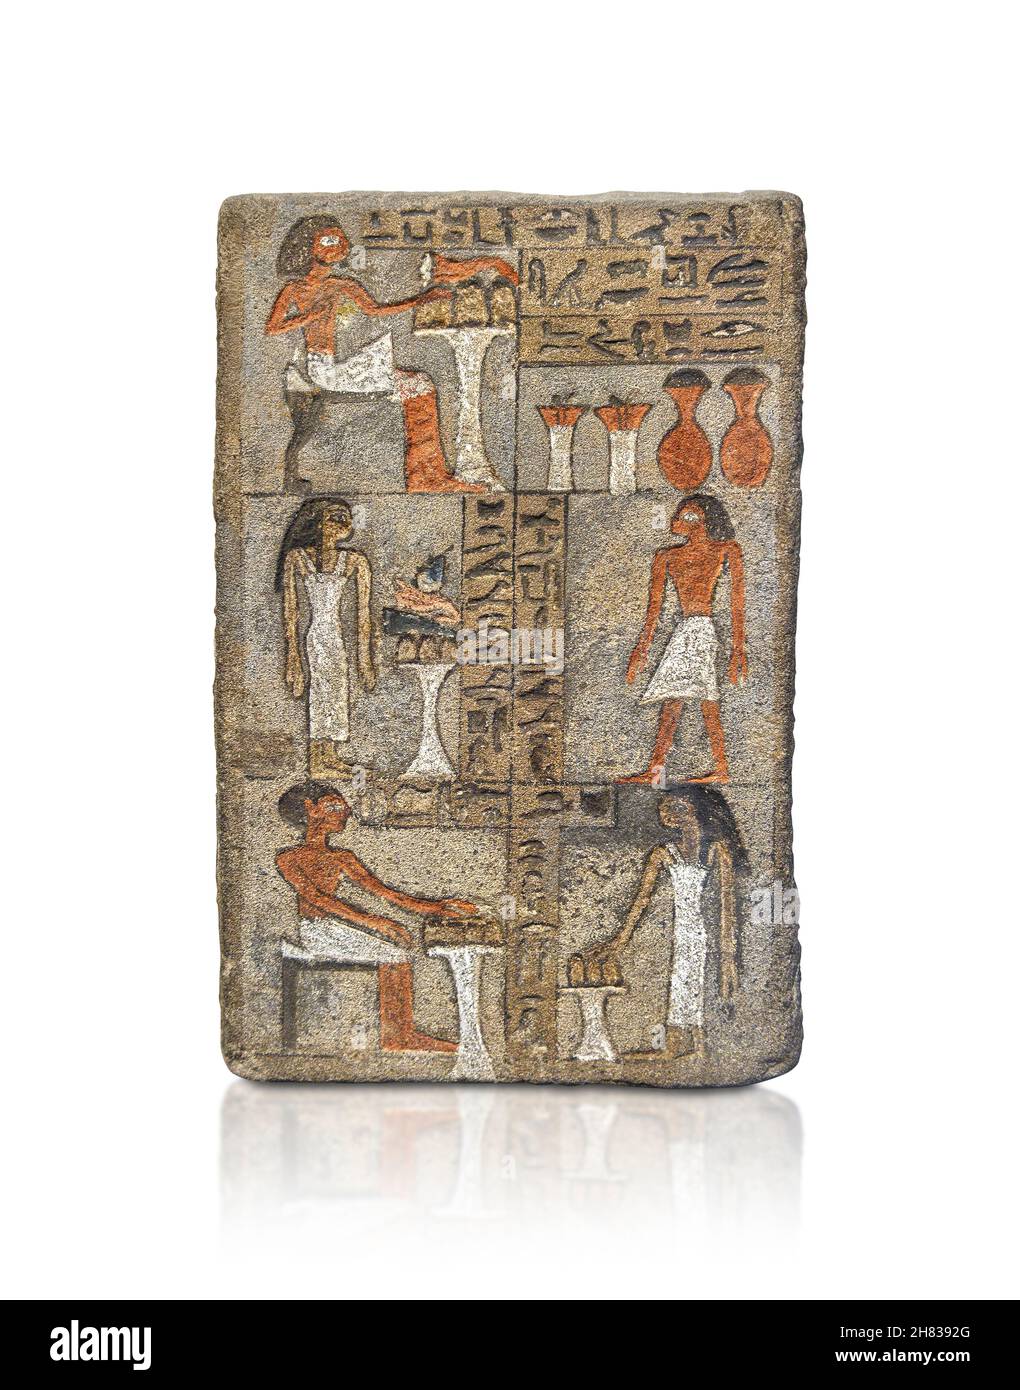 Alte ägyptische Stele von KeMes, 1790–1660 v. Chr., 12–13th Dynastie, Abydos. Kunsthistorisches Museum Wien ALS 112. Oben links ist der Archivar KeMes abgebildet Stockfoto